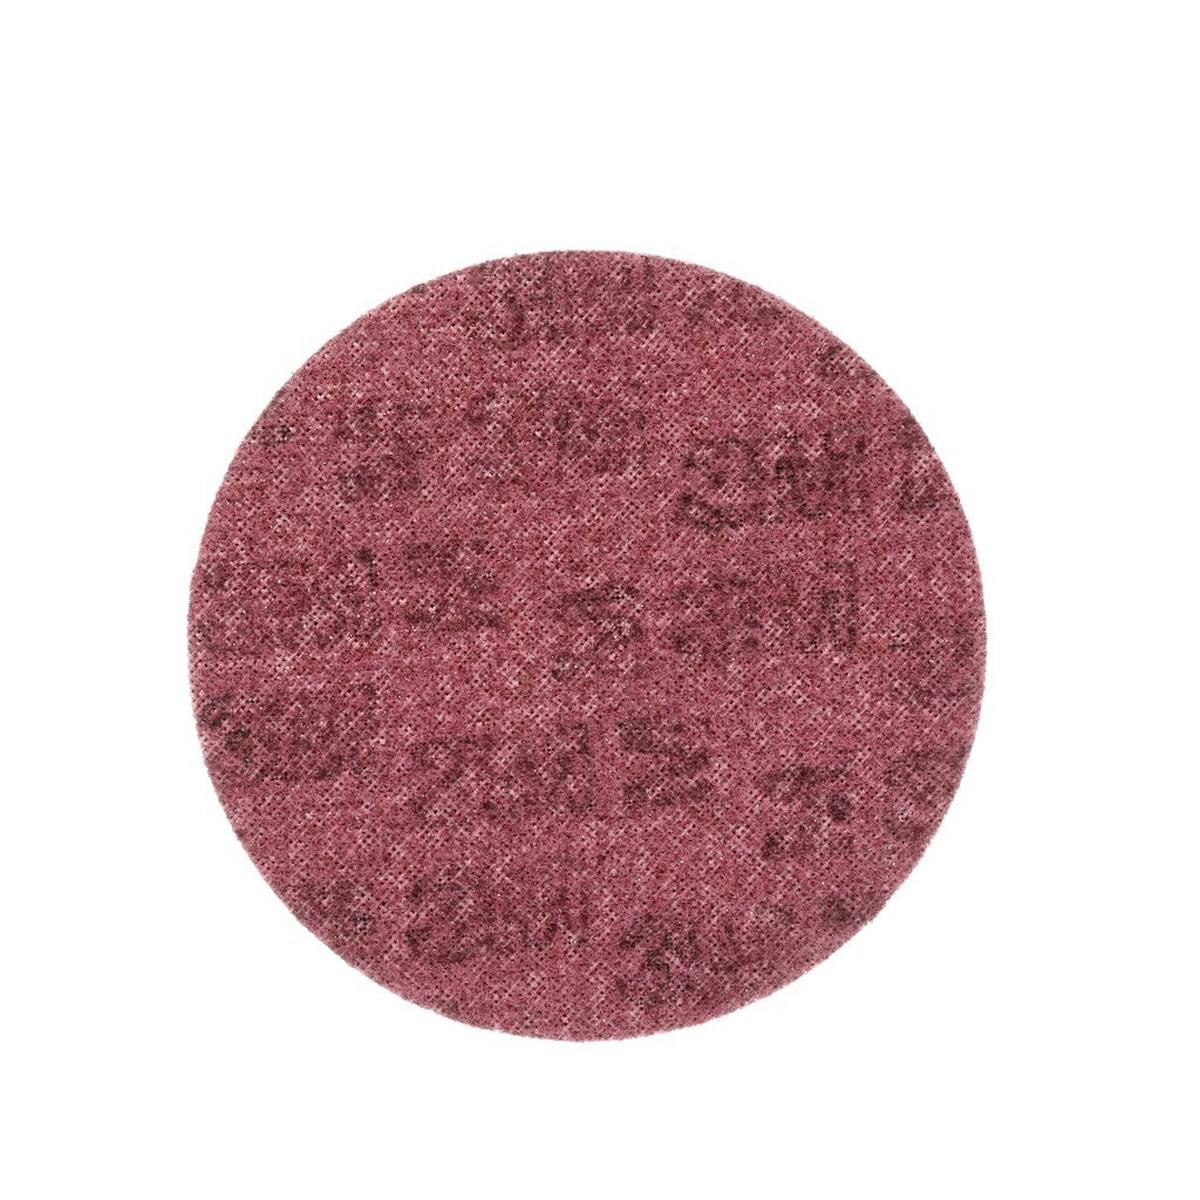 3M Scotch-Brite disco no tejido SC-DH sin centrar, rojo, 125 mm, A, medio #65336